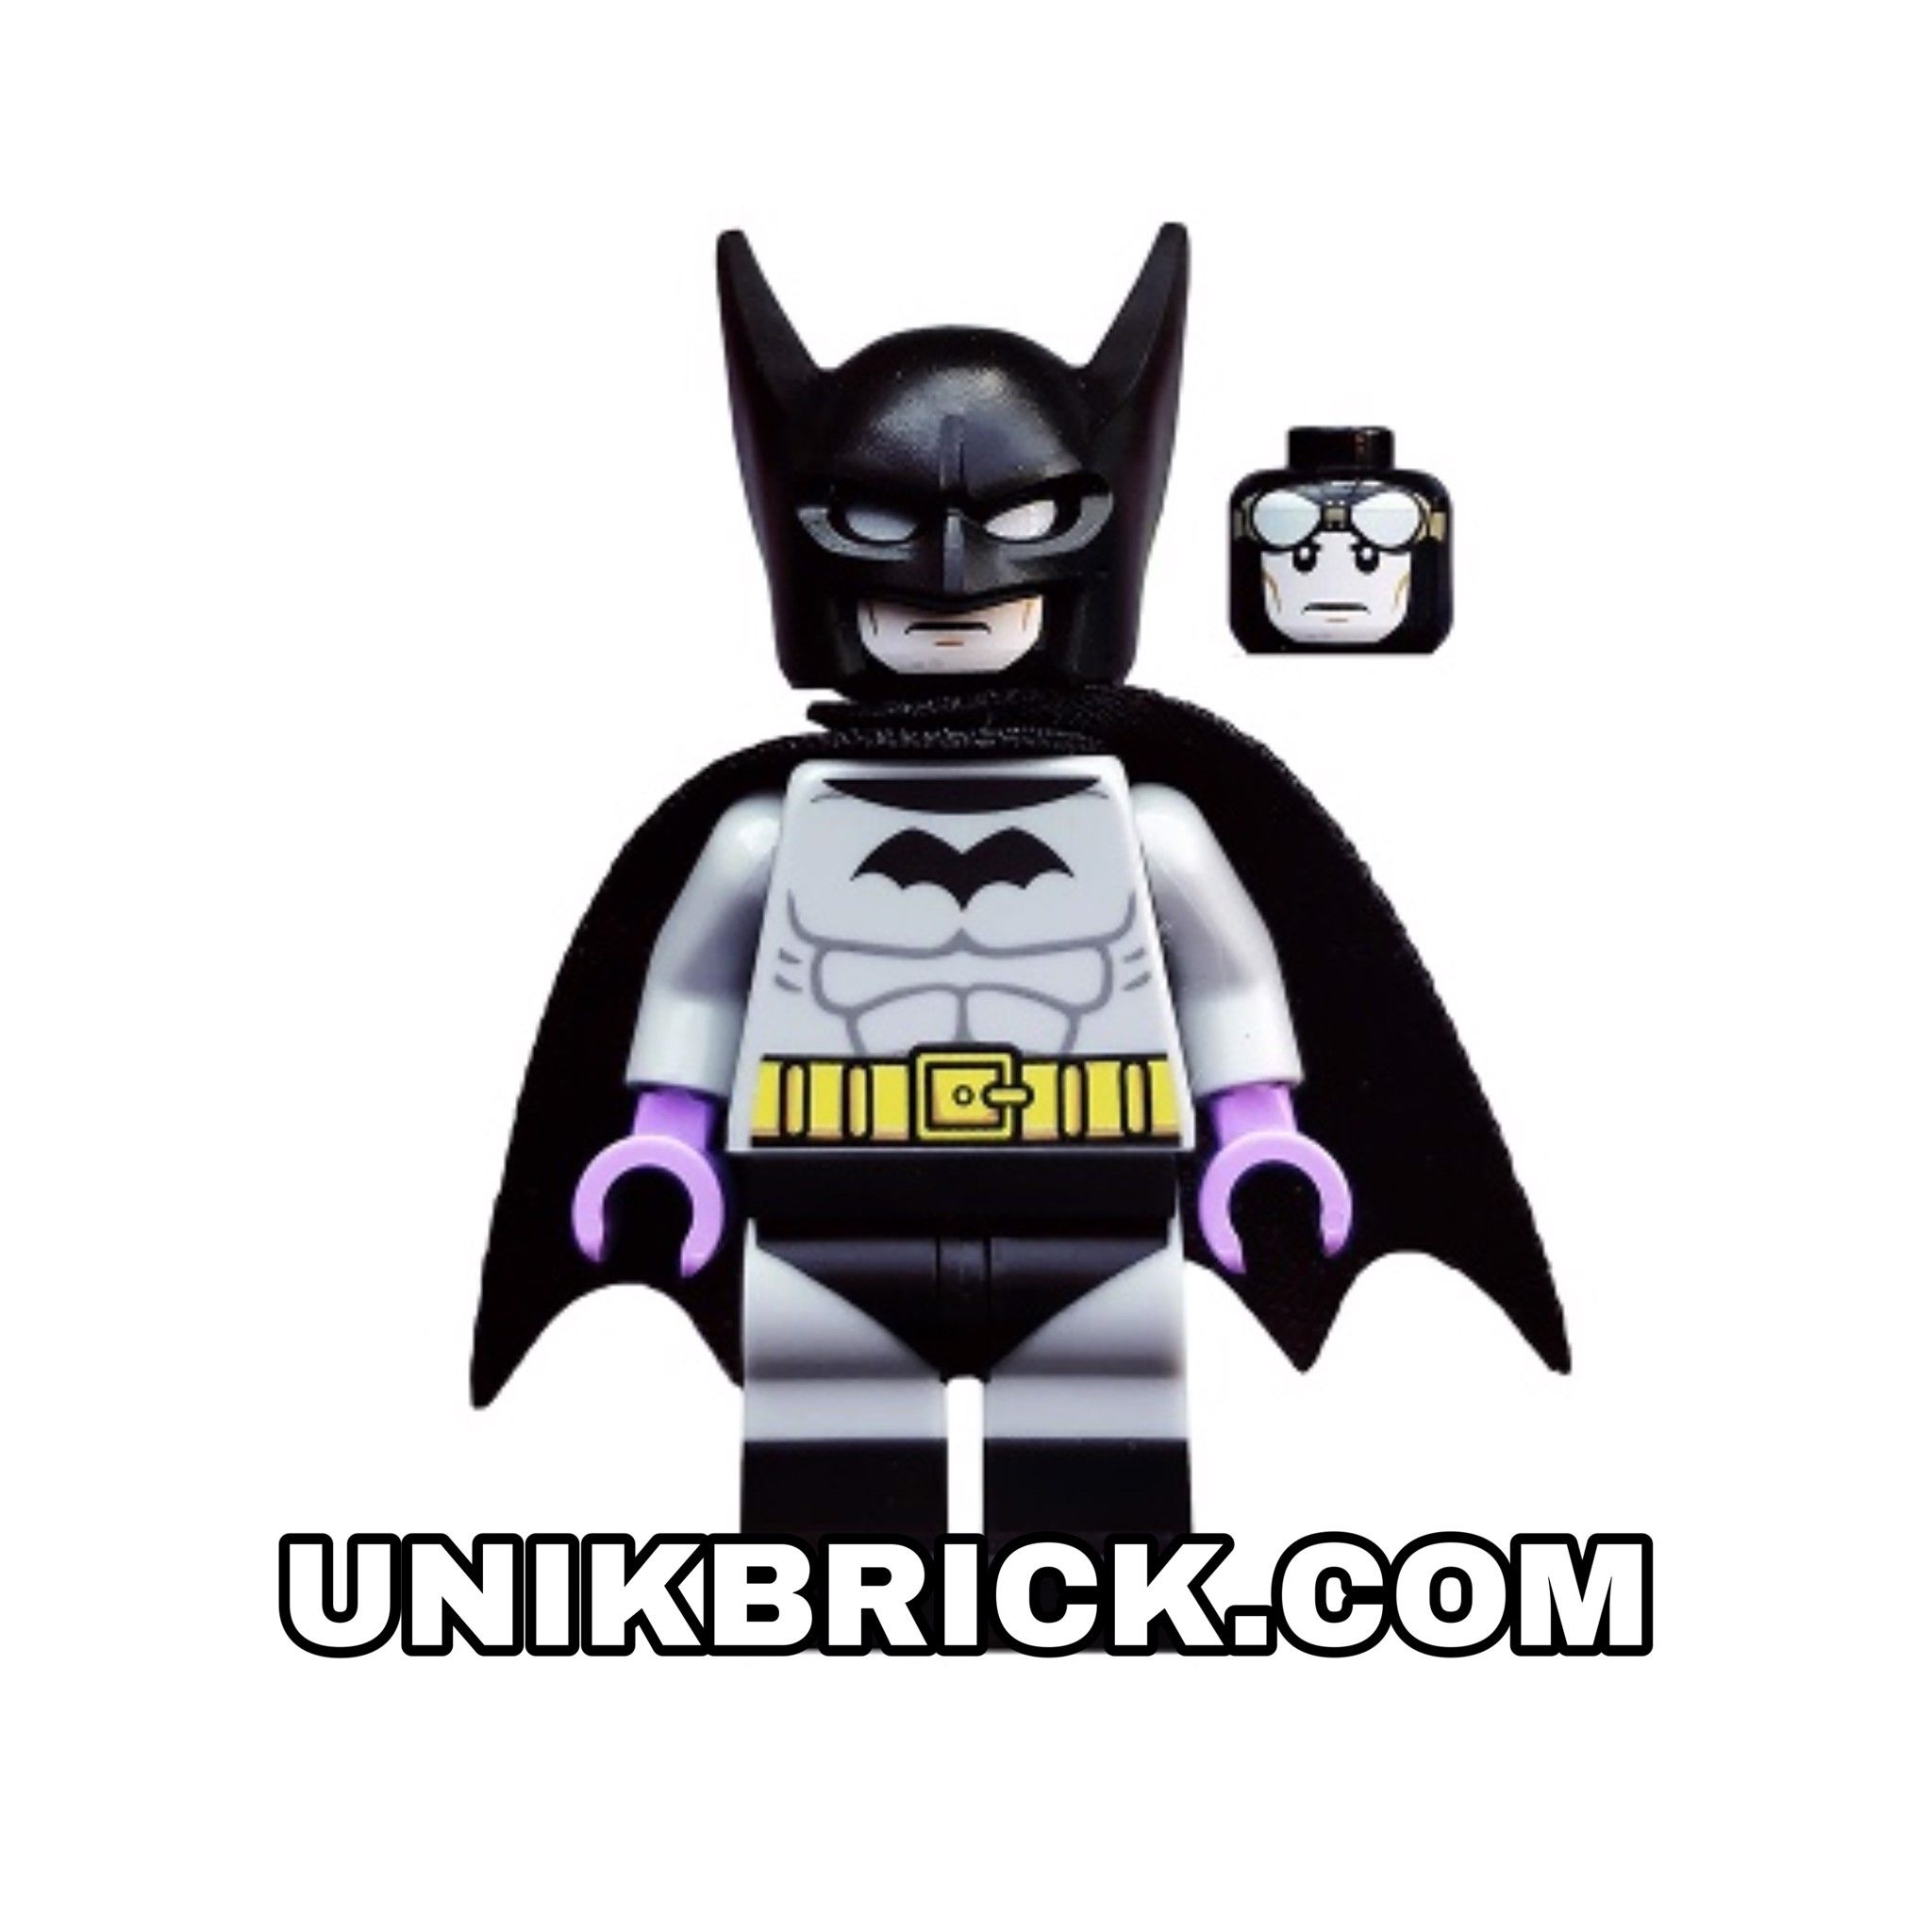 ORDER ITEMS] LEGO Batman DC Super Heroes – UNIK BRICK